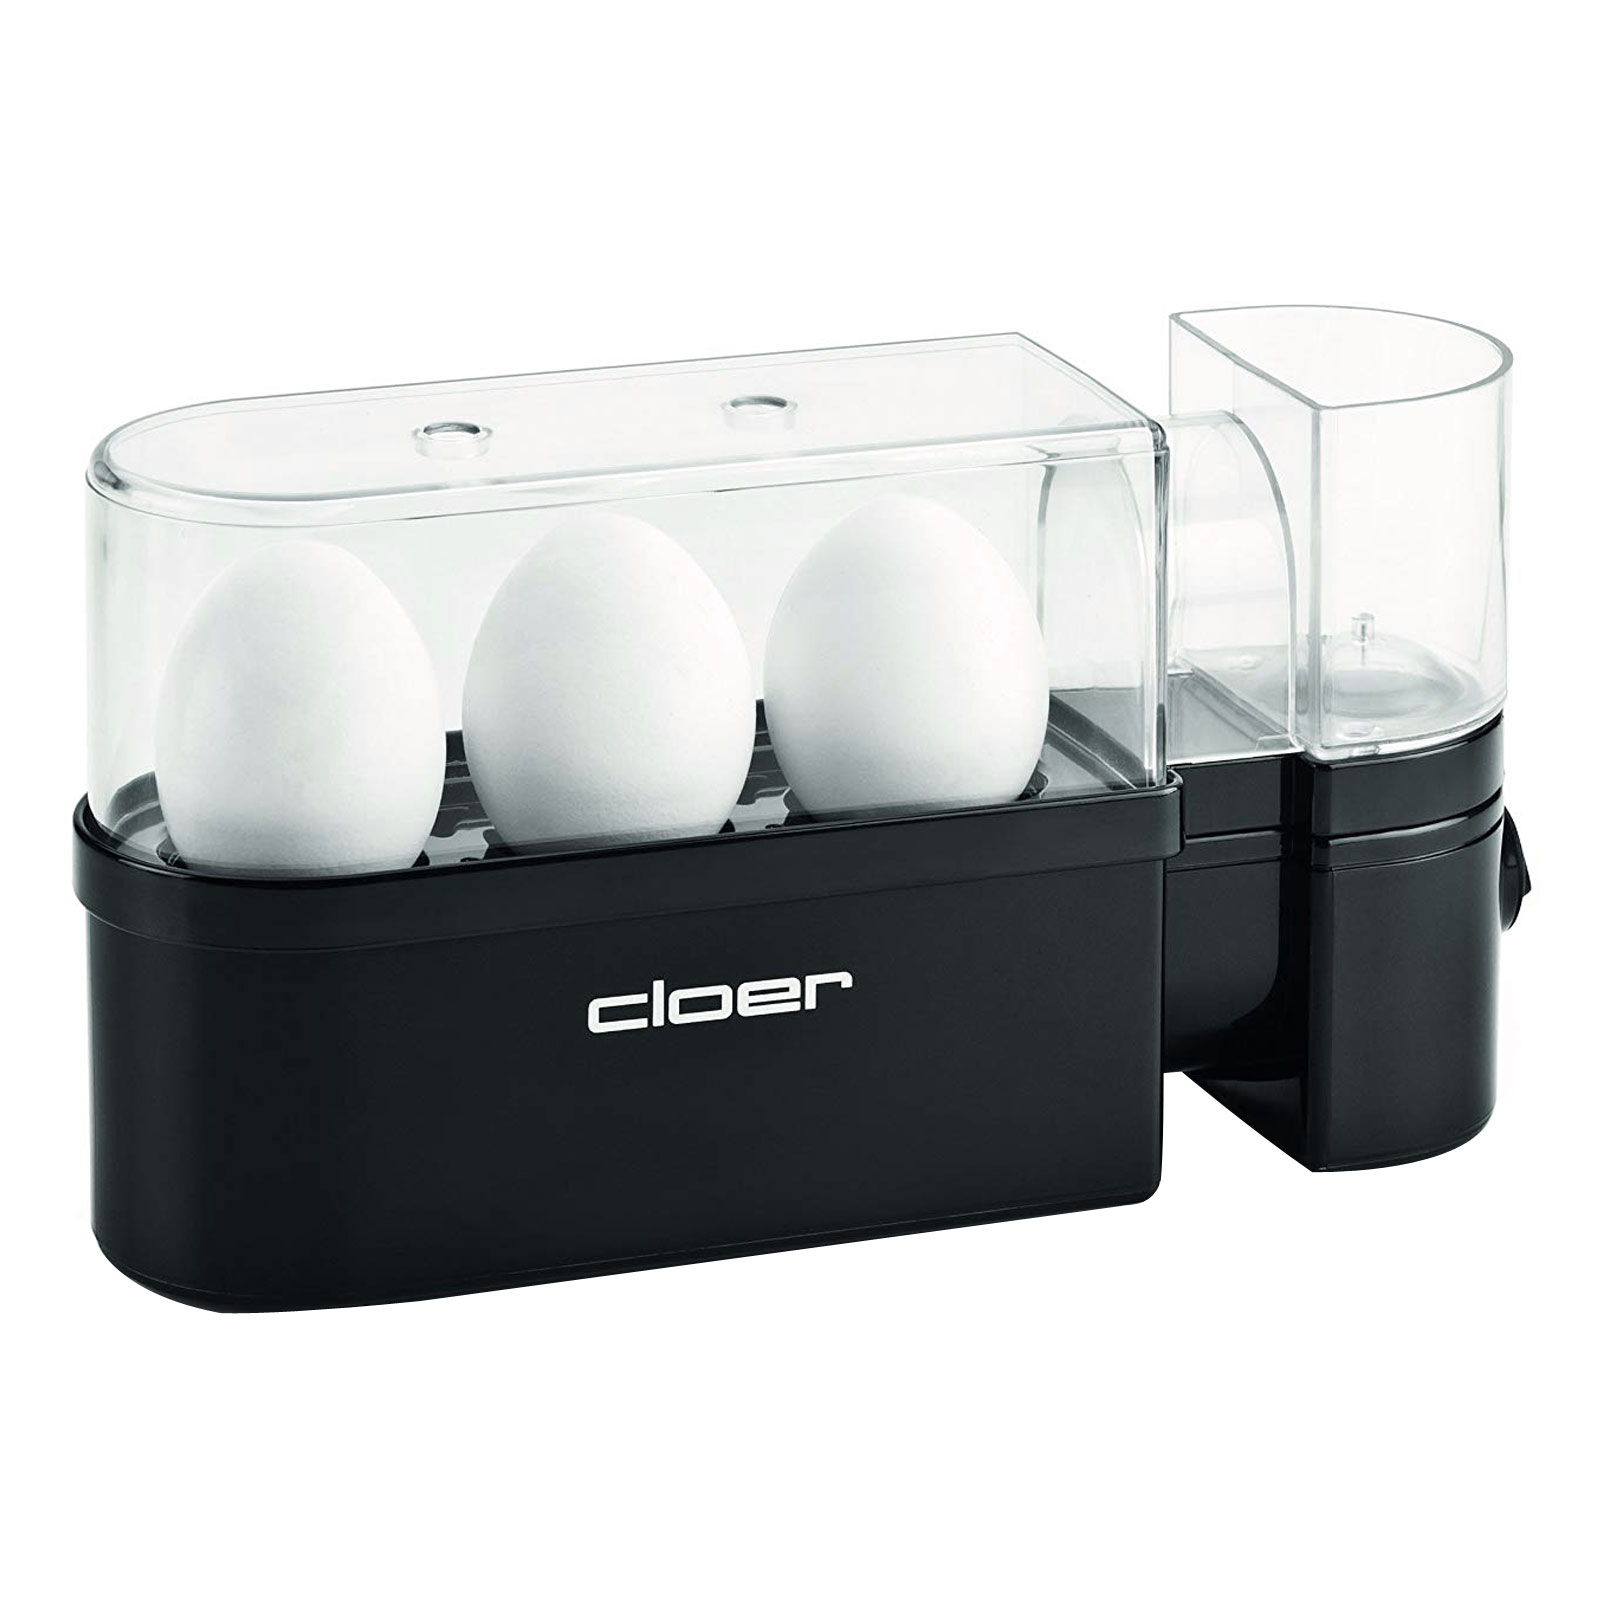 CLOER 6020 Eierkocher, für bis zu 3 Eier, spülmaschinengeeignet, An- Ausschalter